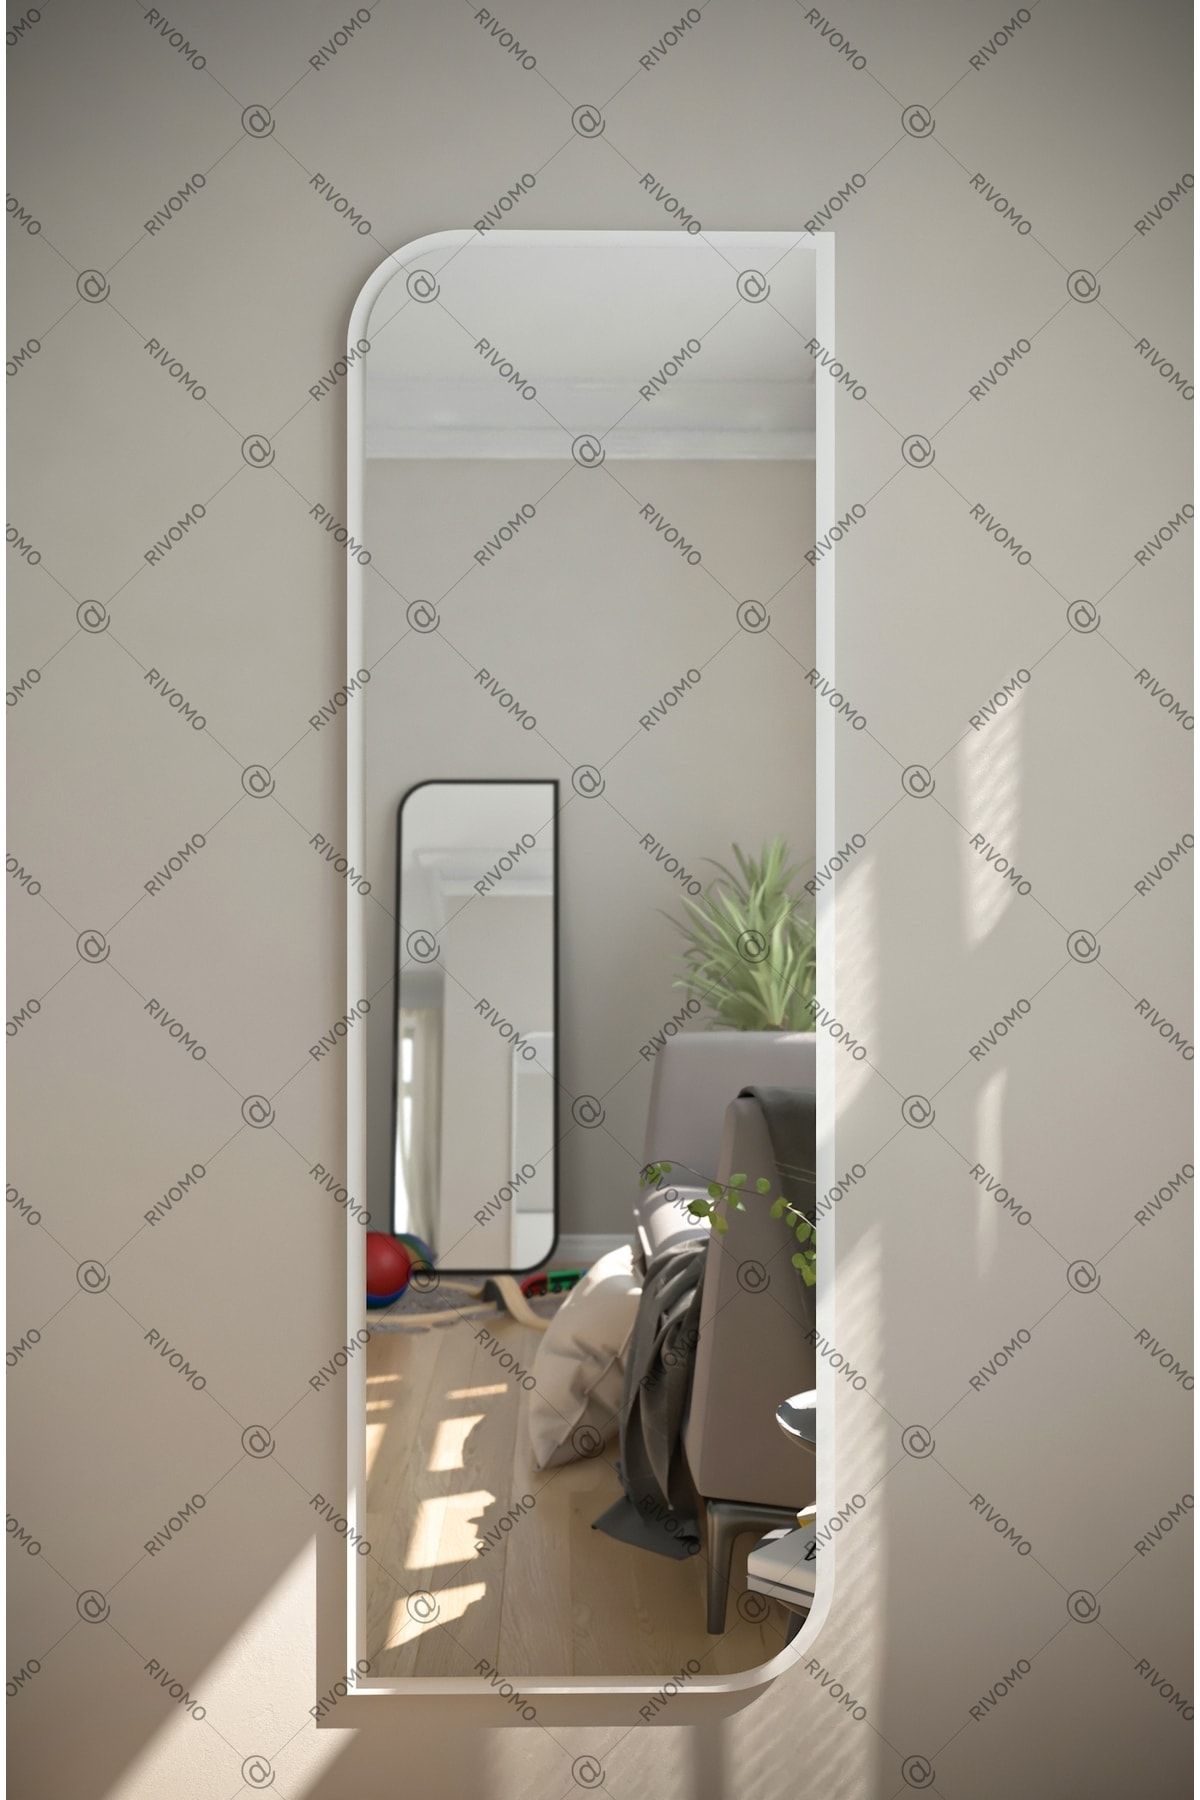 rivomo Beyaz Dekoratif Boy Aynası 150x50